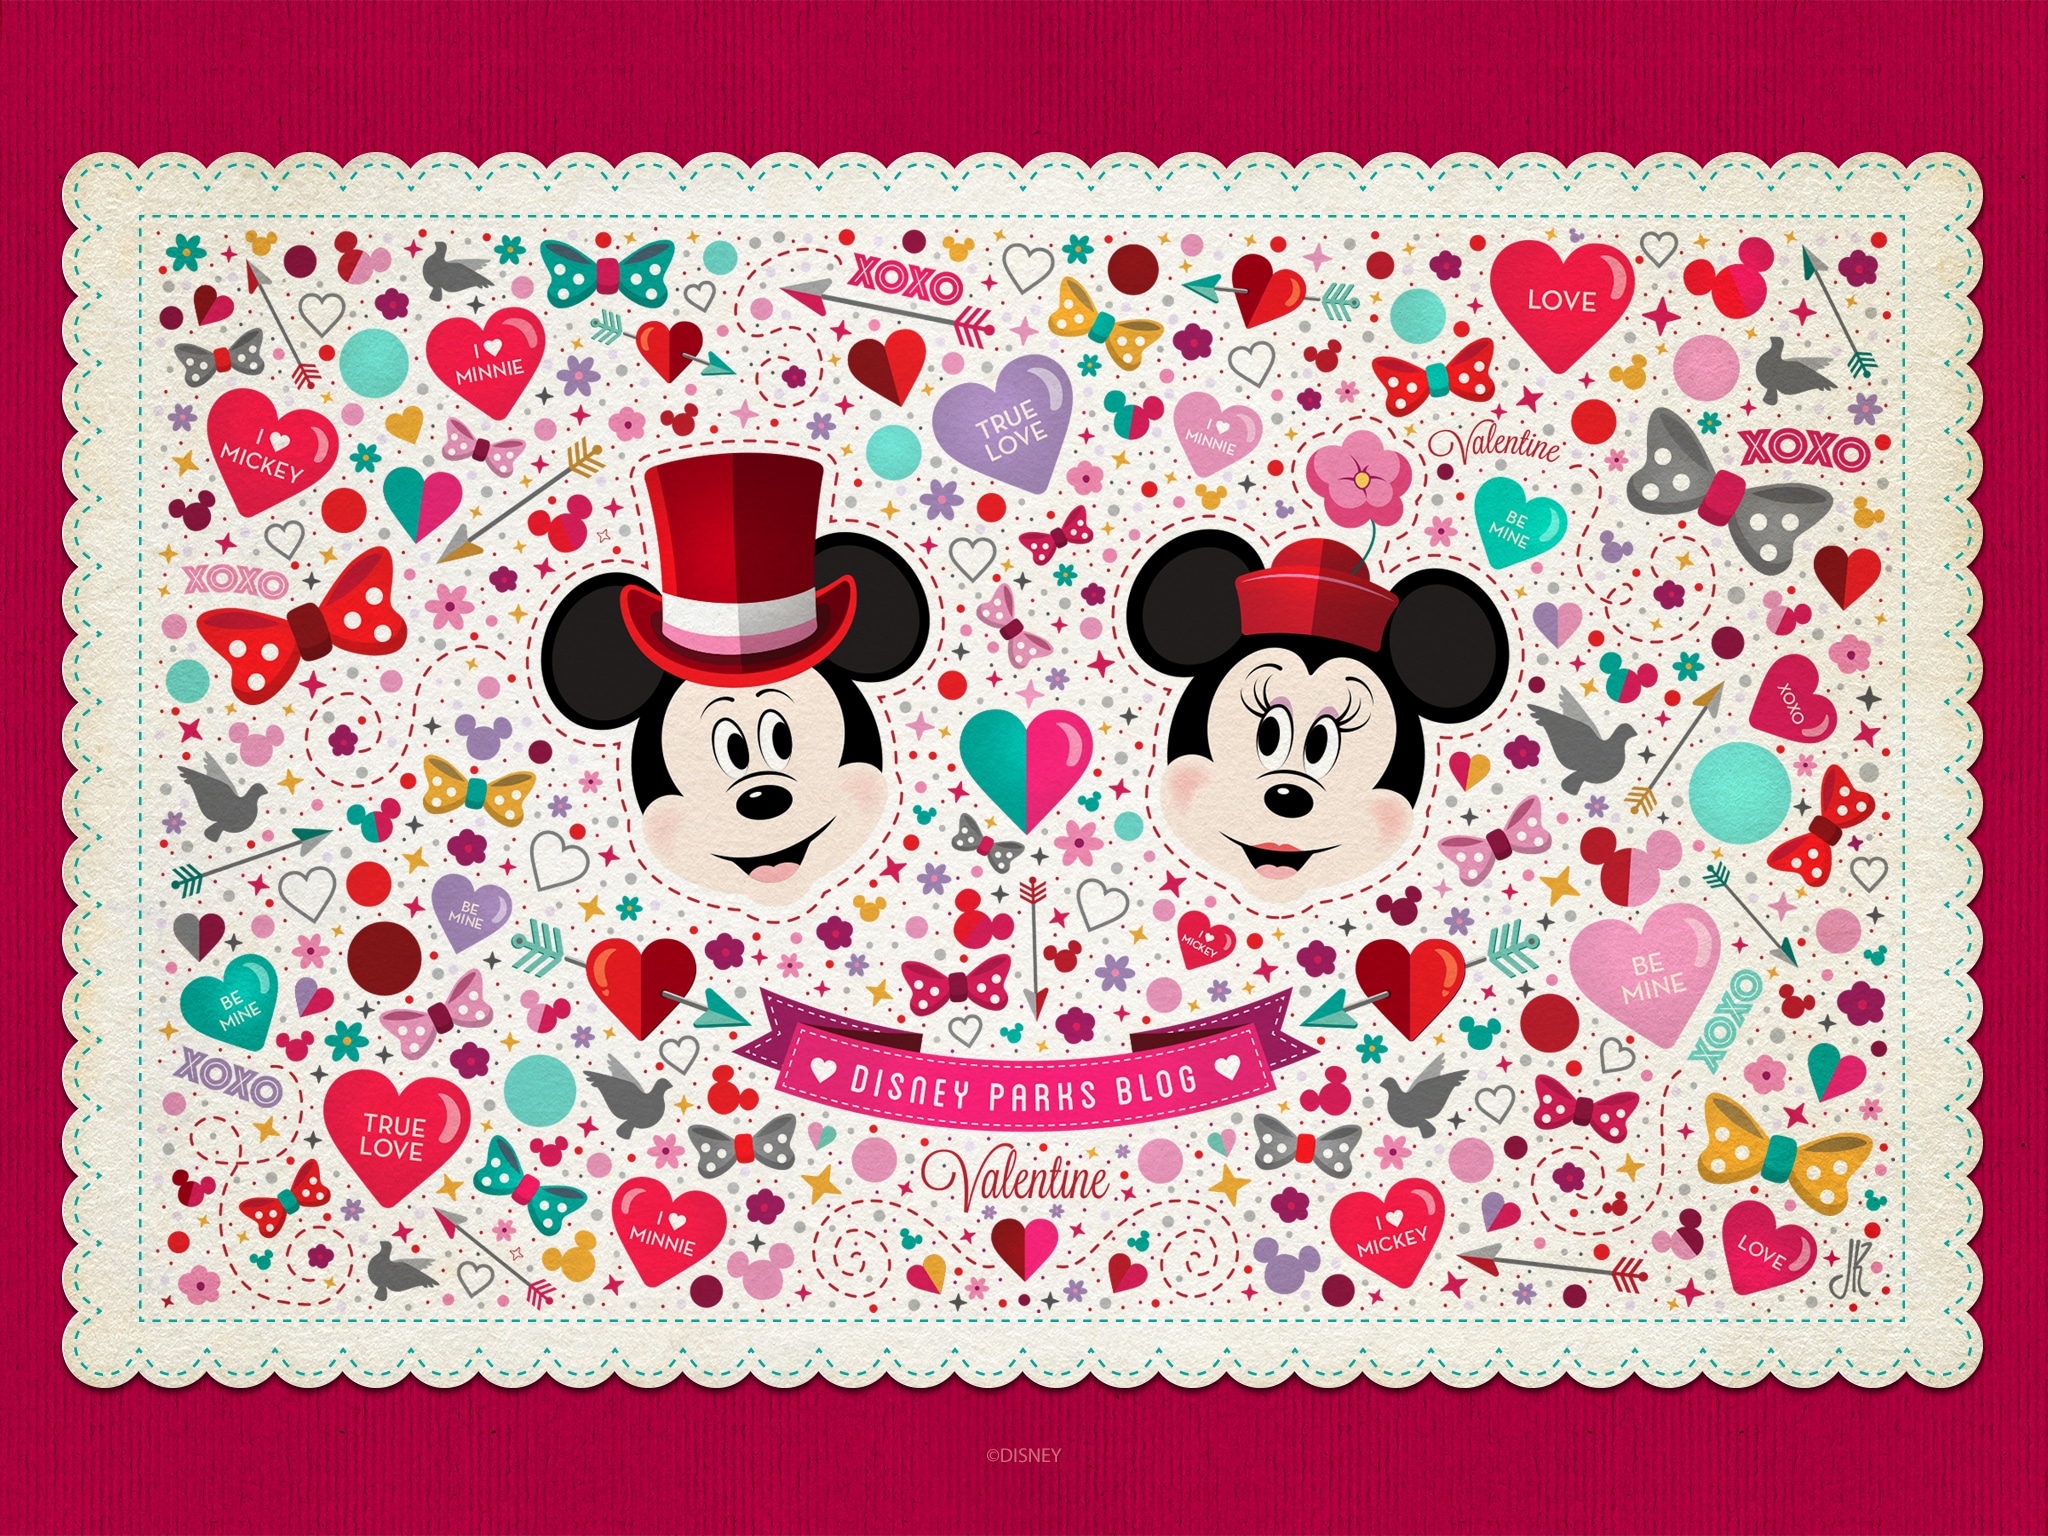 Những bức hình nền của Disney vào dịp Valentine này sẽ đem lại cho bạn và người yêu của bạn những cảm giác ngọt ngào và đầy tình yêu. Hãy xem ngay hình ảnh này với chủ đề đặc biệt này để đón nhận những khoảnh khắc đẹp và đầy ý nghĩa vào dịp Valentine.